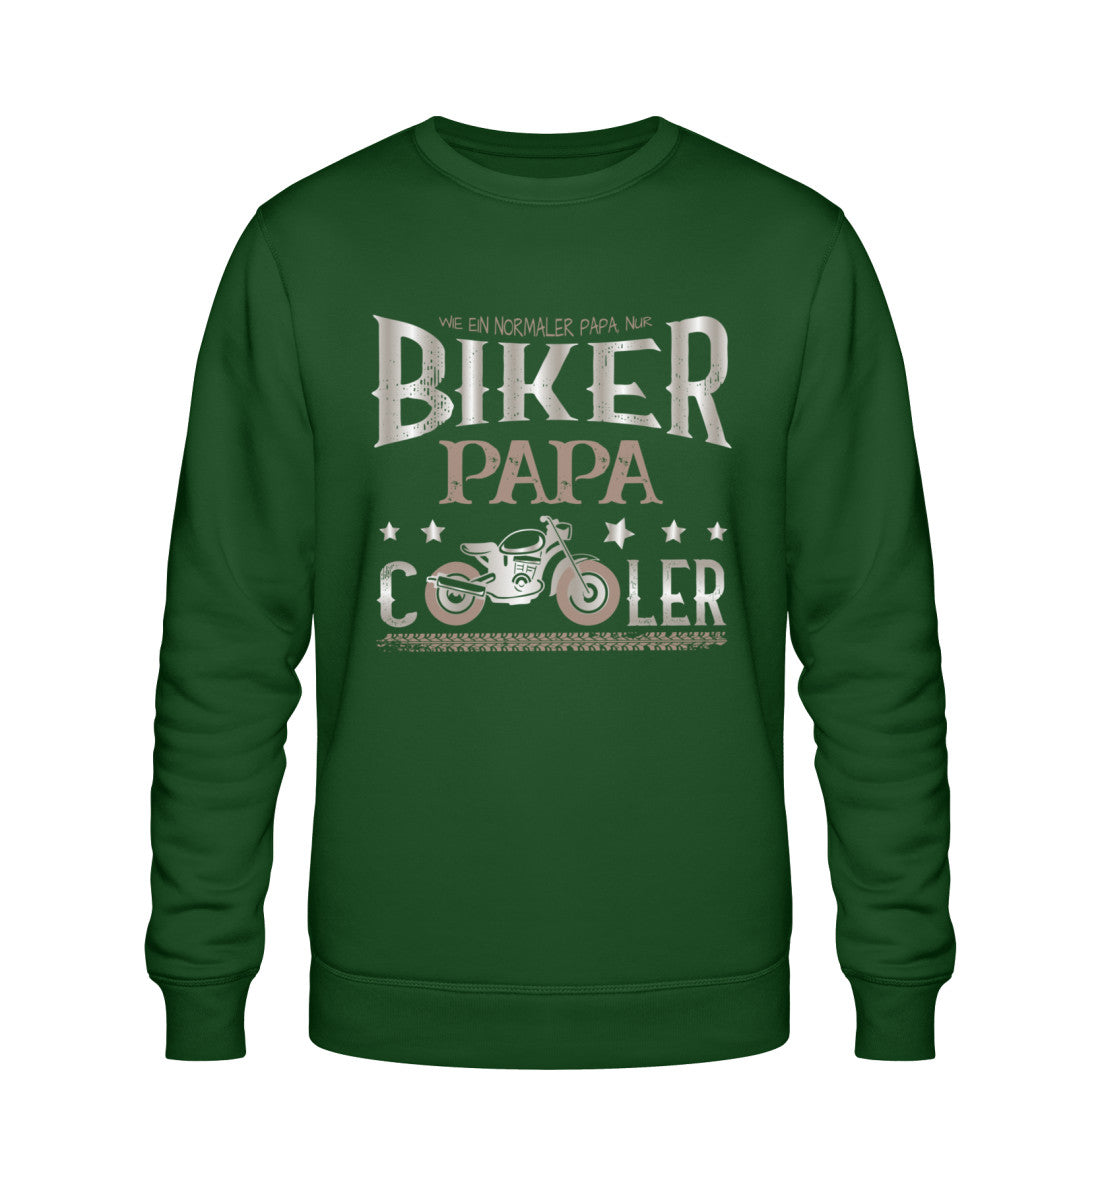 Ein Biker Sweatshirt für Motorradfahrer von Wingbikers mit dem Aufdruck, Biker Papa - Wie ein normaler Papa nur cooler - in dunkelgrün.